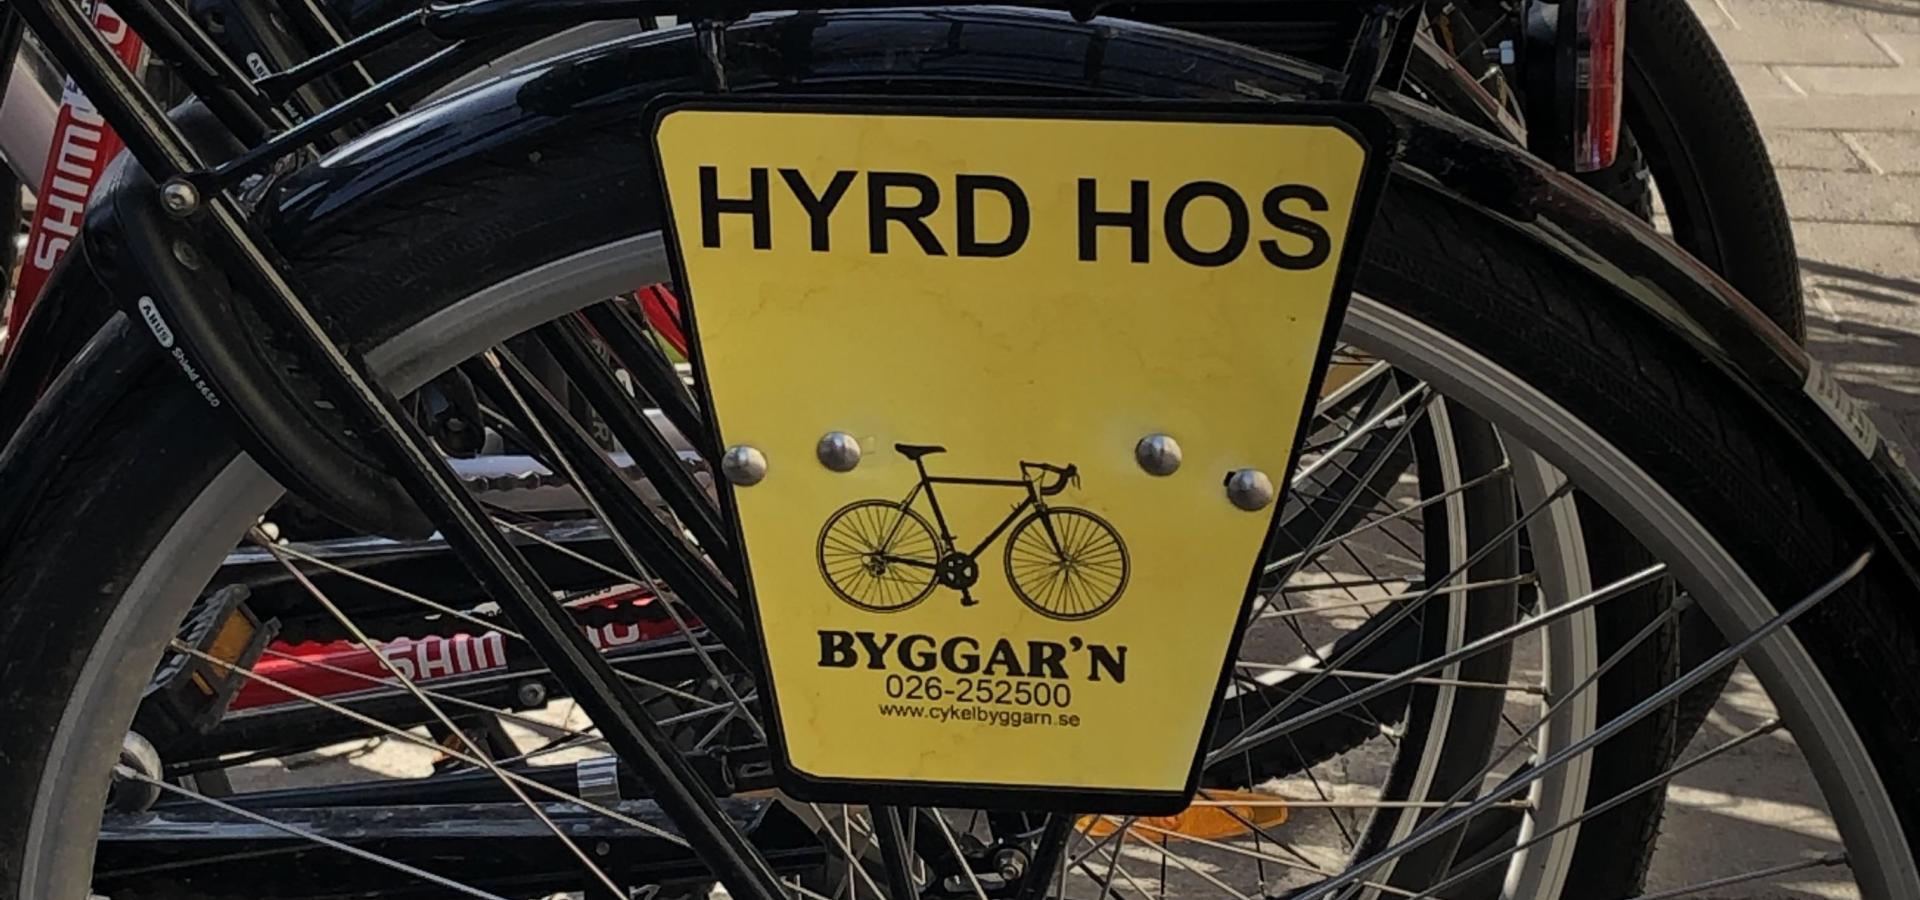 Cykel Byggar´n